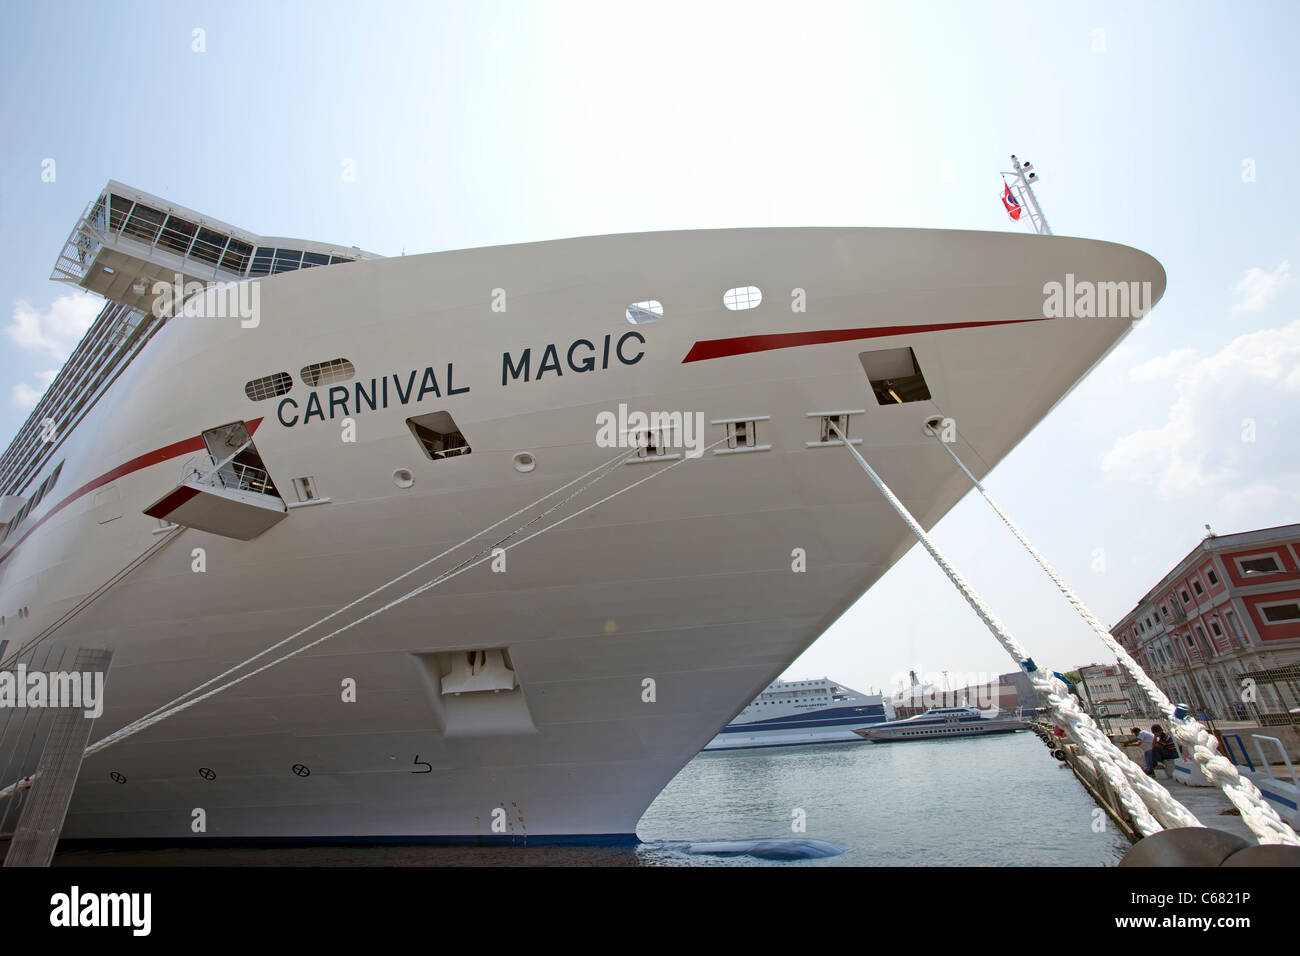 Carnival Magic neue Kreuzfahrtschiff im Hafen Venedig Italien. Vorderansicht der Krawatte Seile Andocken zu schließen. Stockfoto